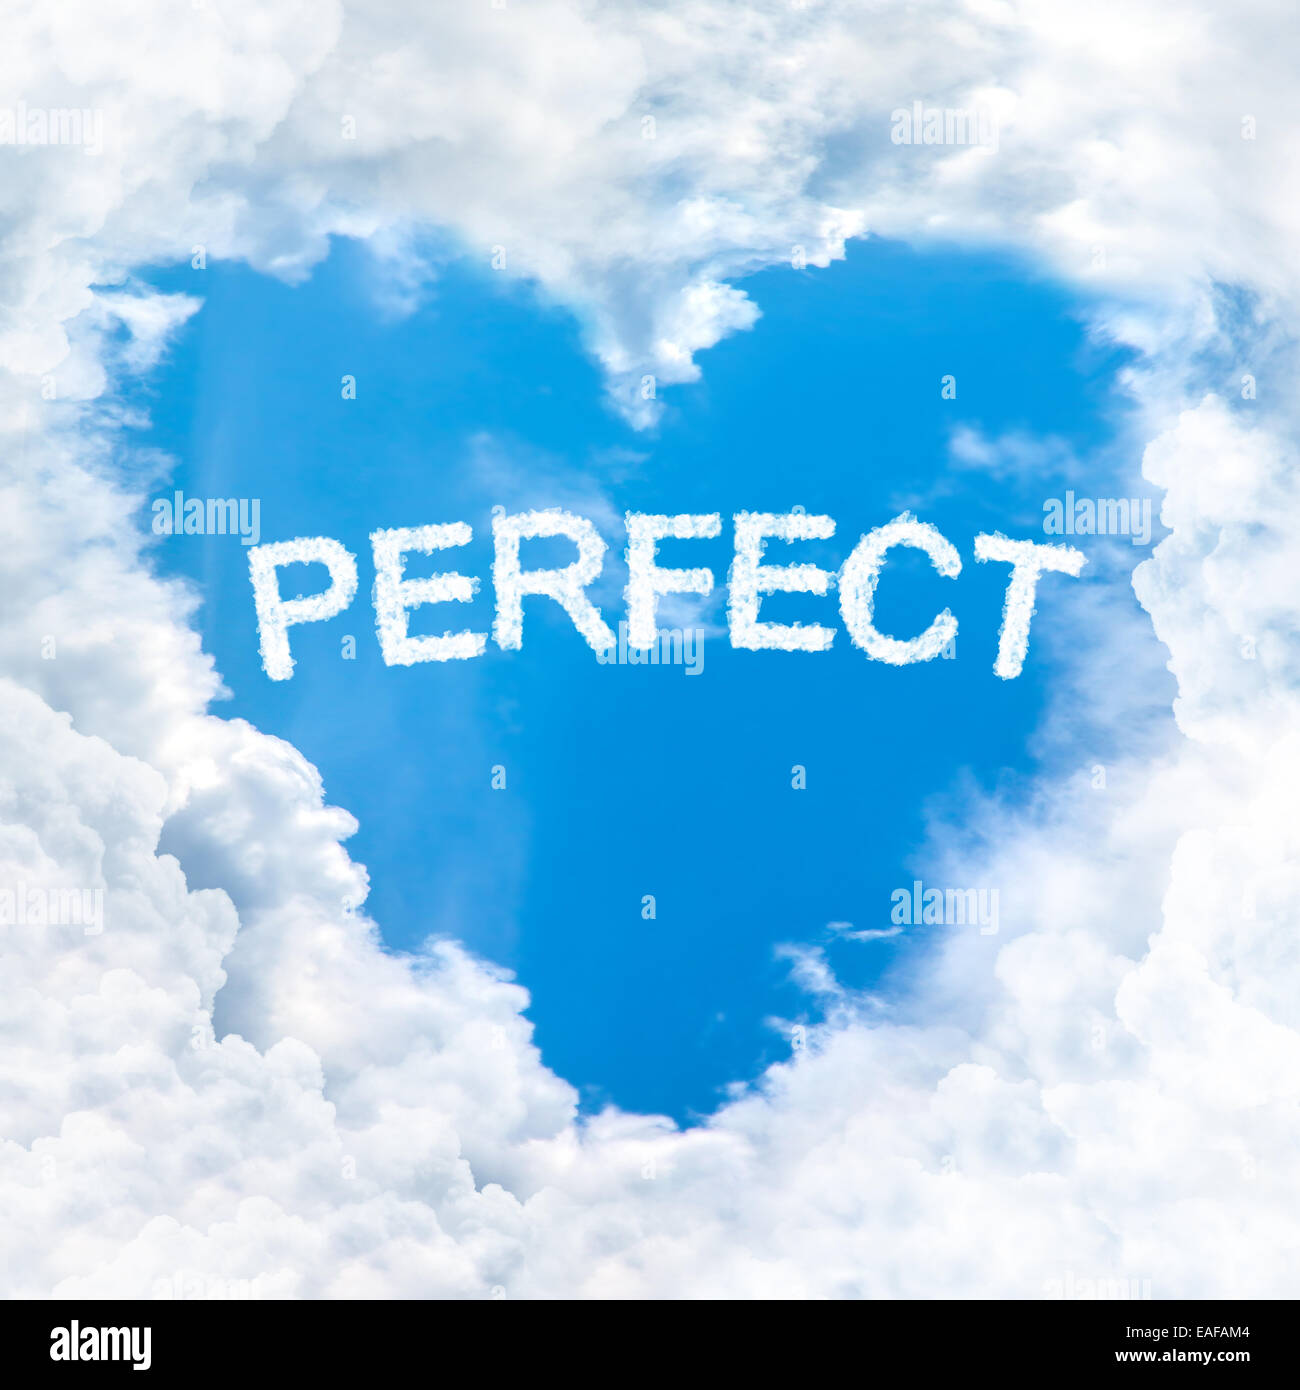 Perfetta parola all'interno di amore il cloud forma di cuore blue sky solo in background Foto Stock